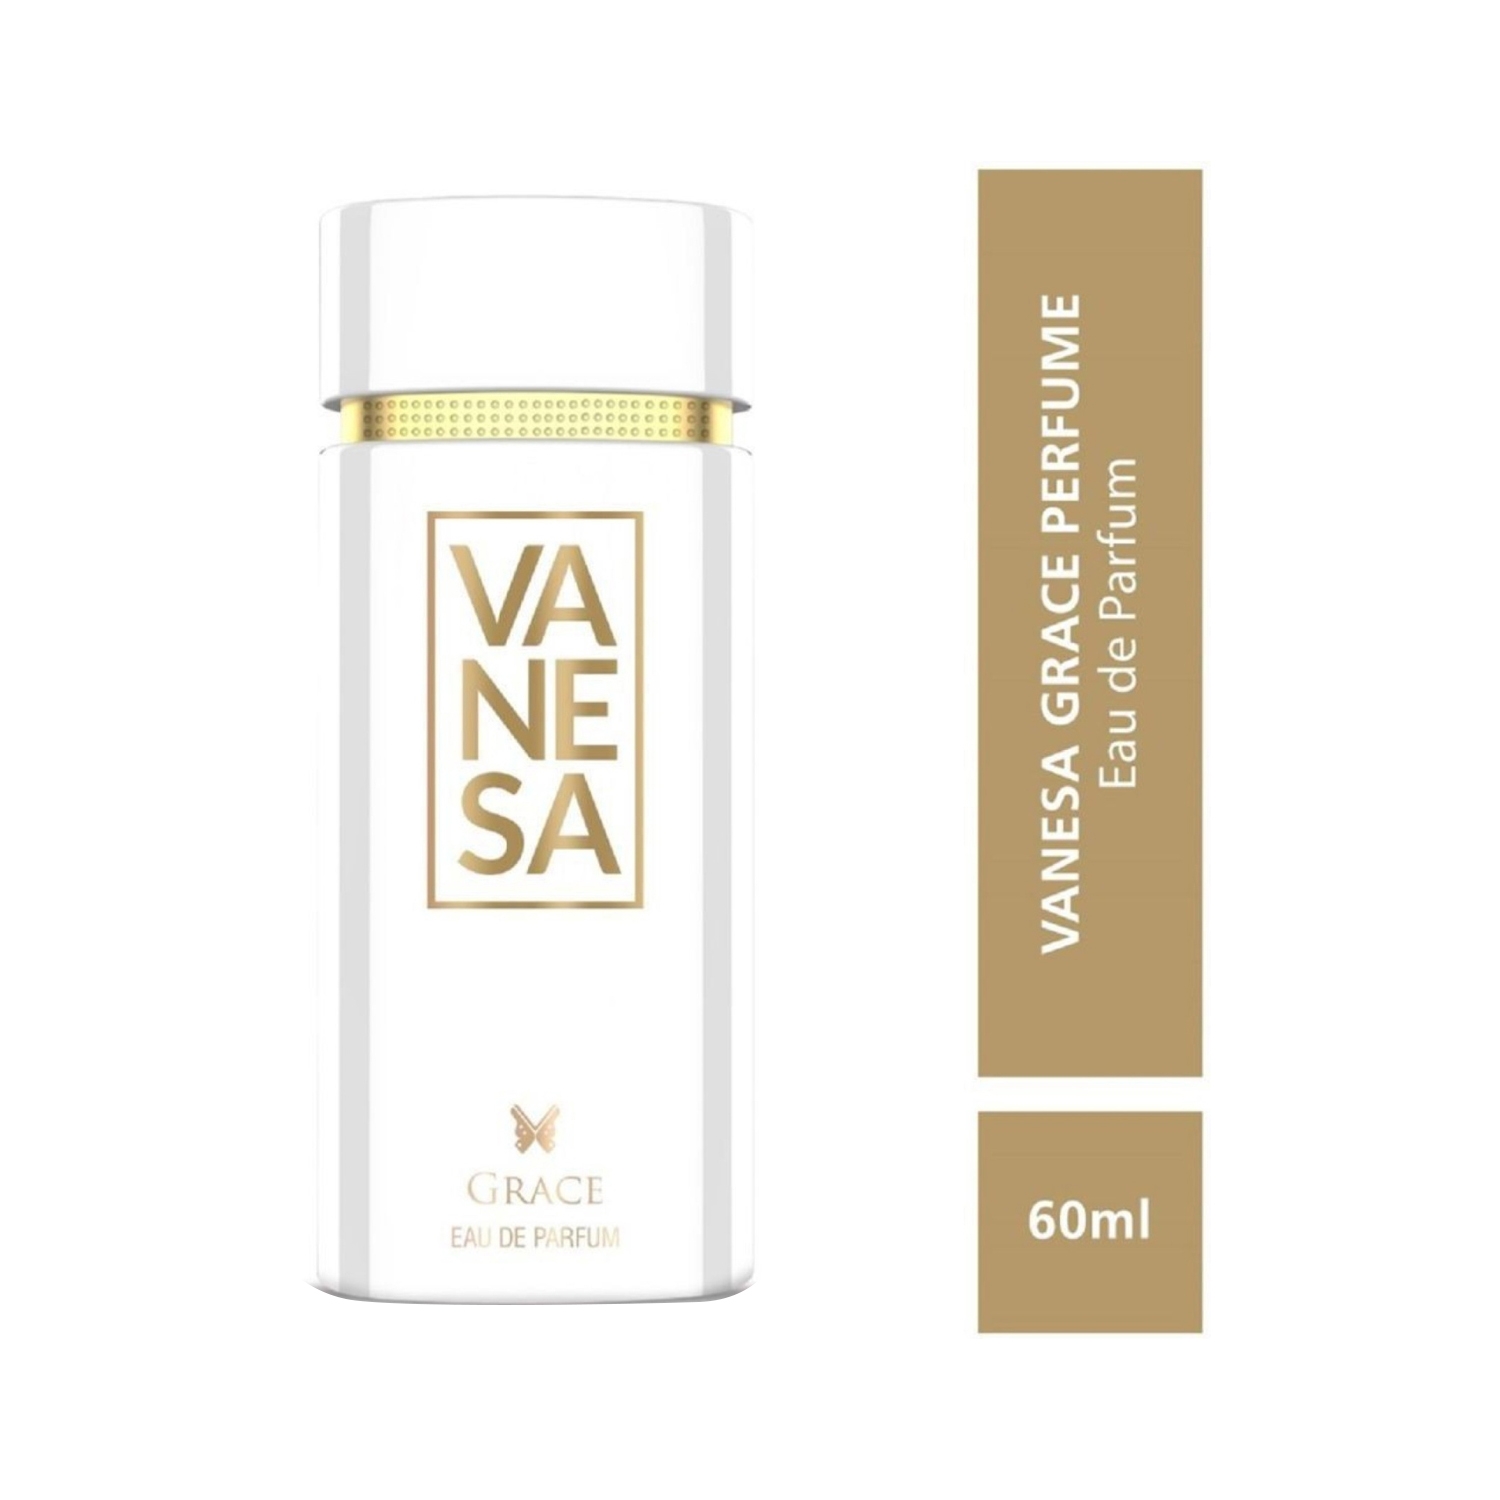 Vanesa | Vanesa Grace Eau De Parfum (60ml)